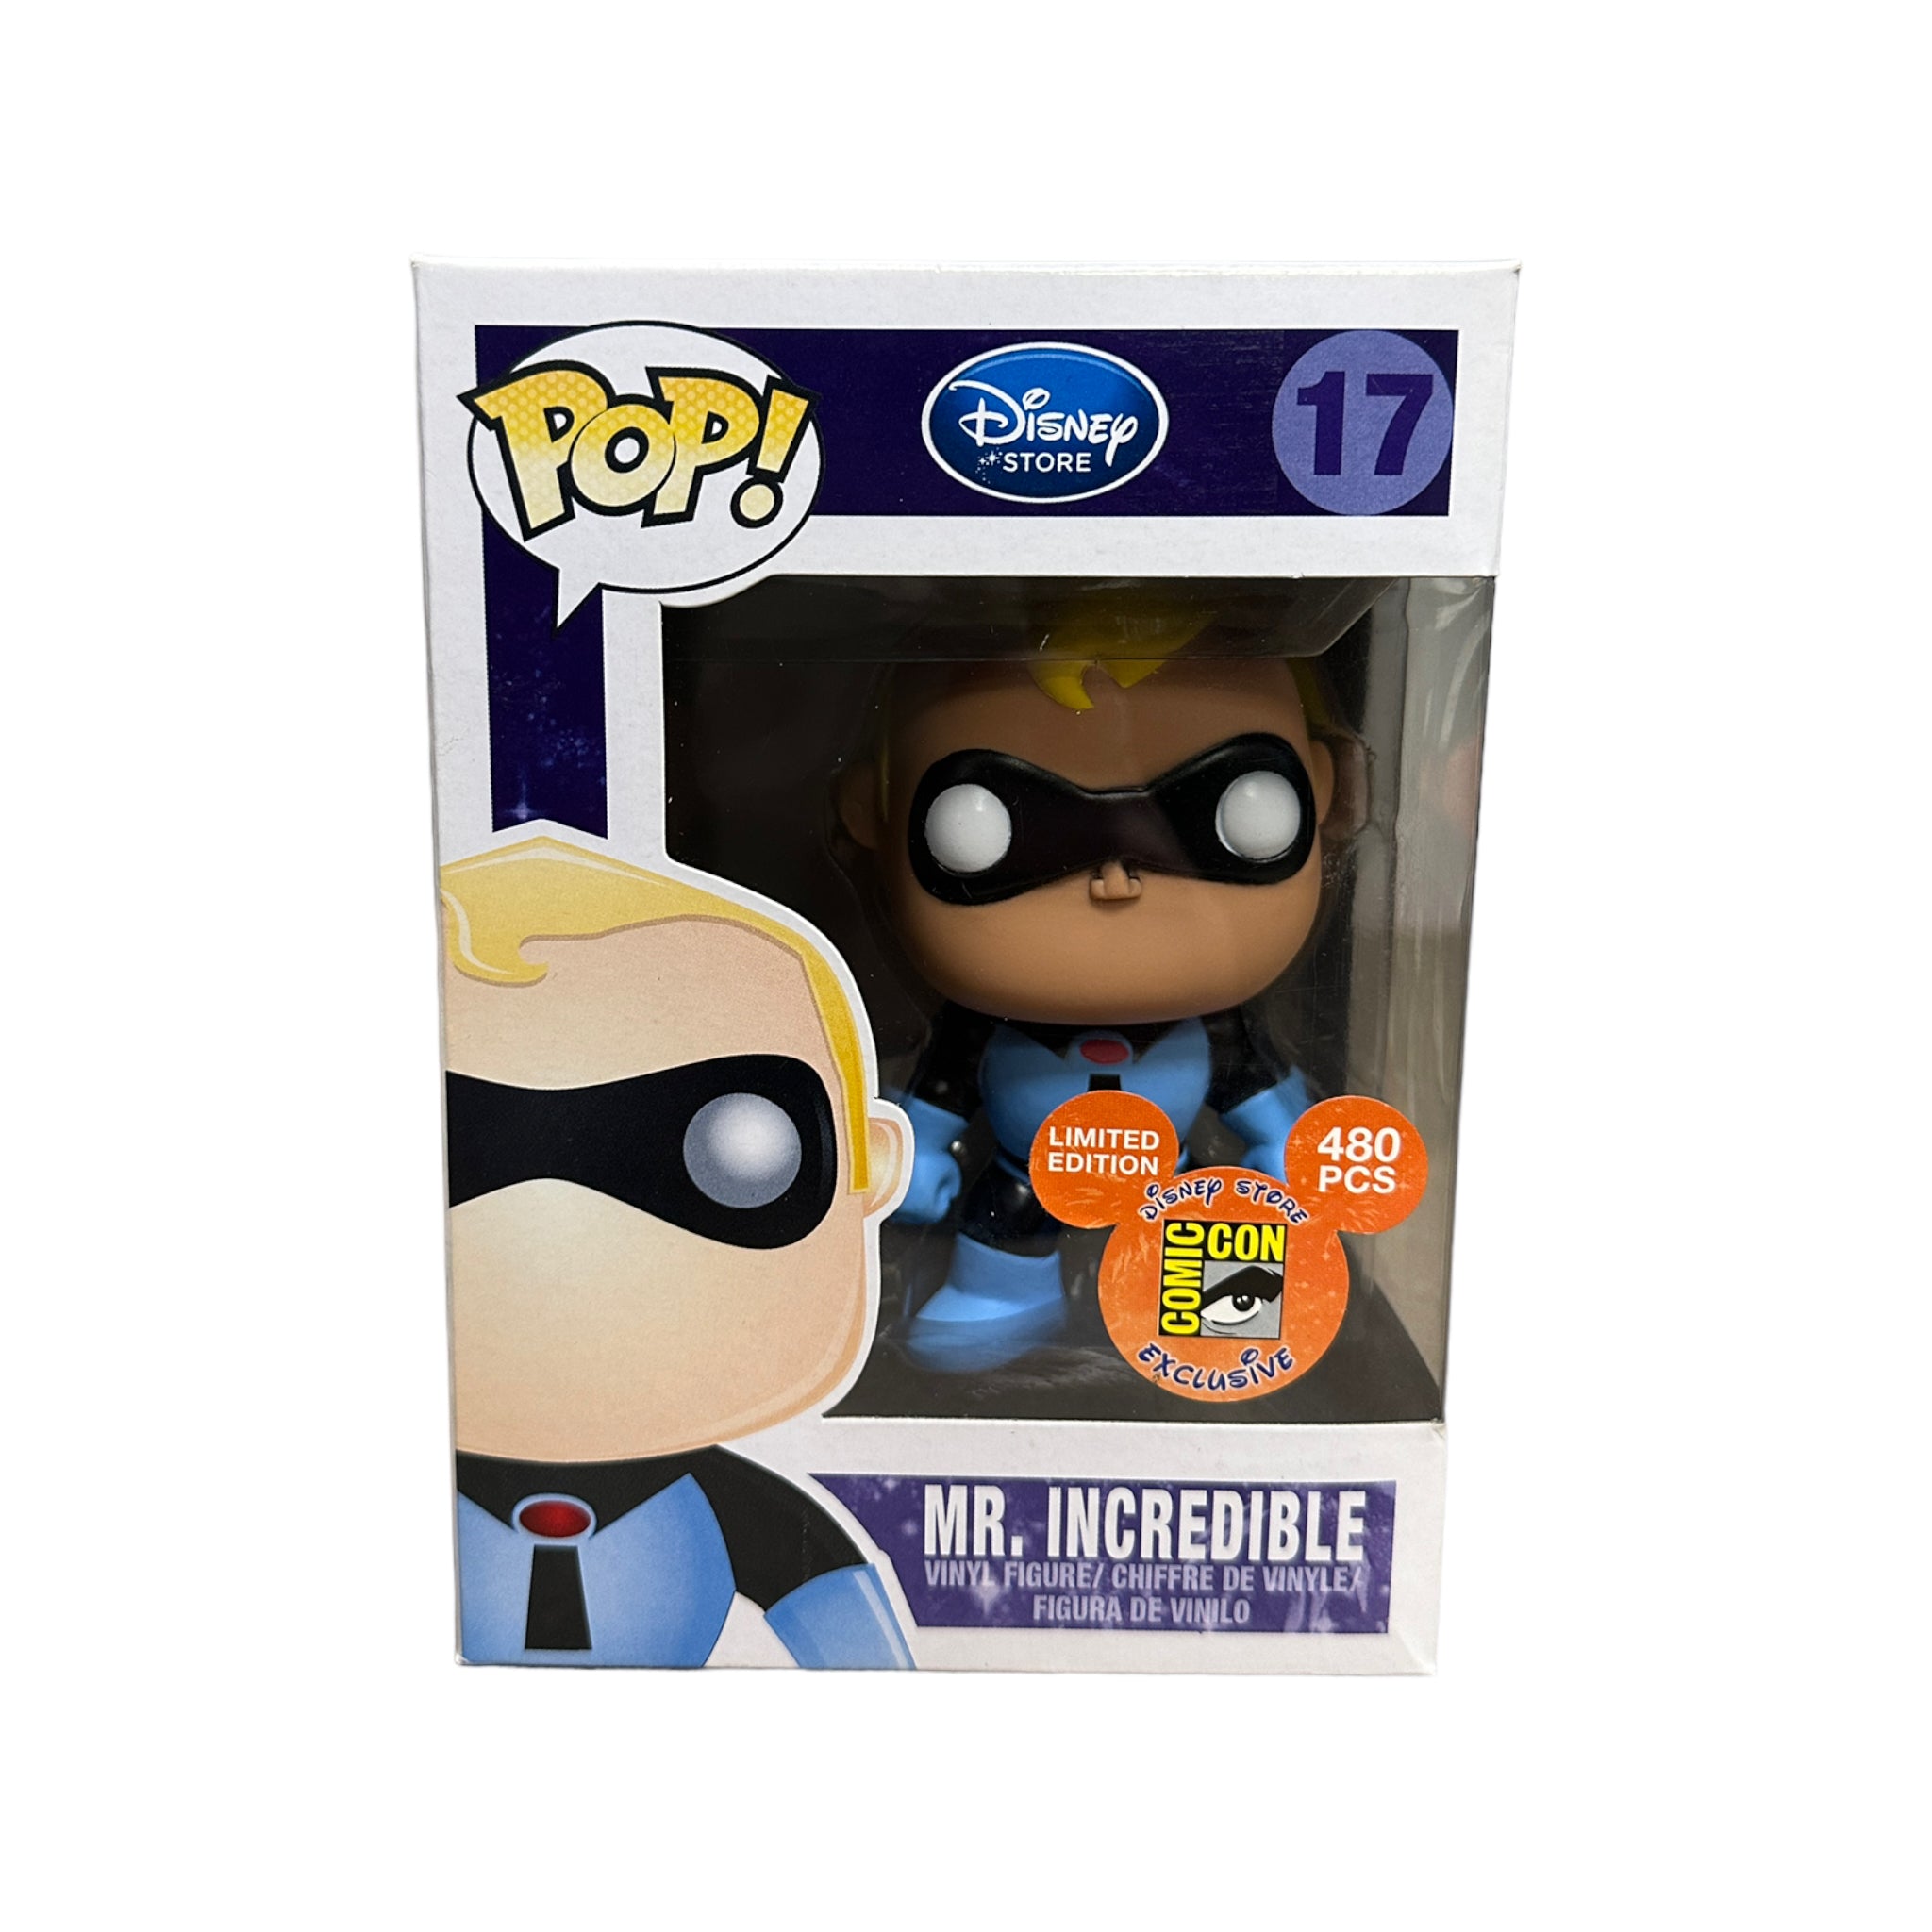 Mr. Incredible #17 (Blue Suit) Funko Pop! - Disney Series 2 - Disney Store SDCC 2011 Exclusive LE480 Pcs - Condition 7.5/10